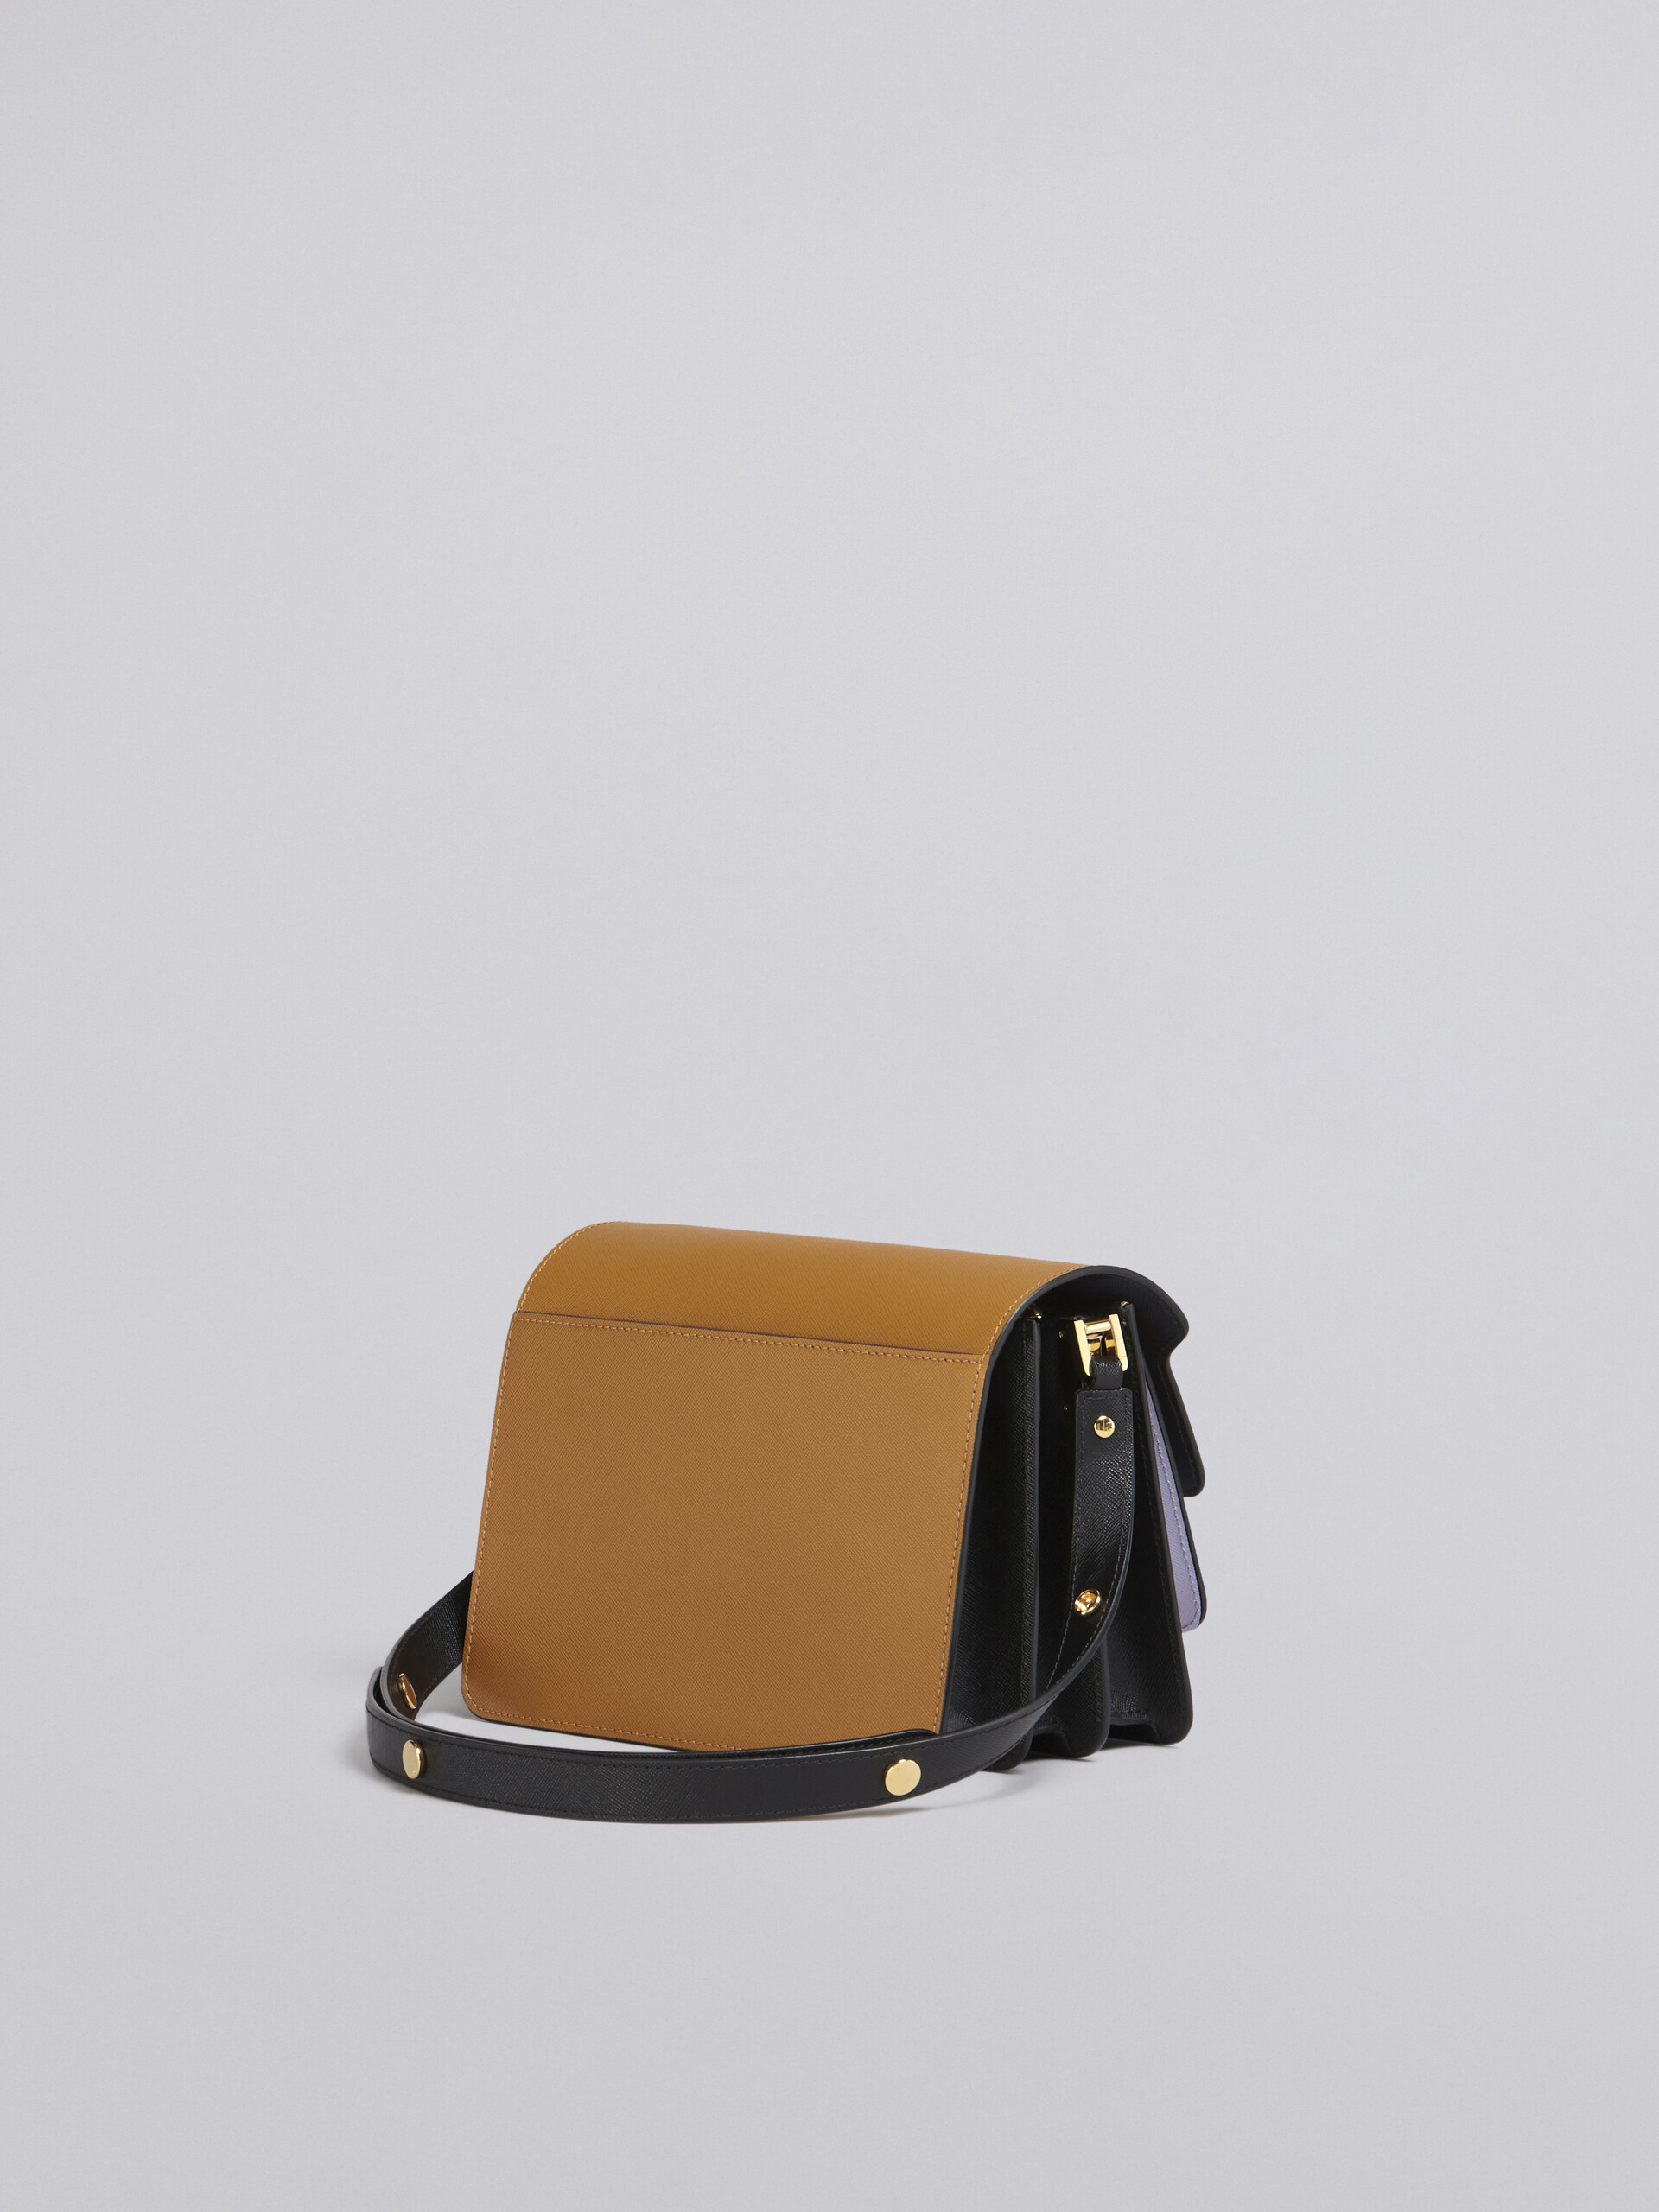 TRUNK bag in saffiano marrone lilla e nero - Borse a spalla - Image 3